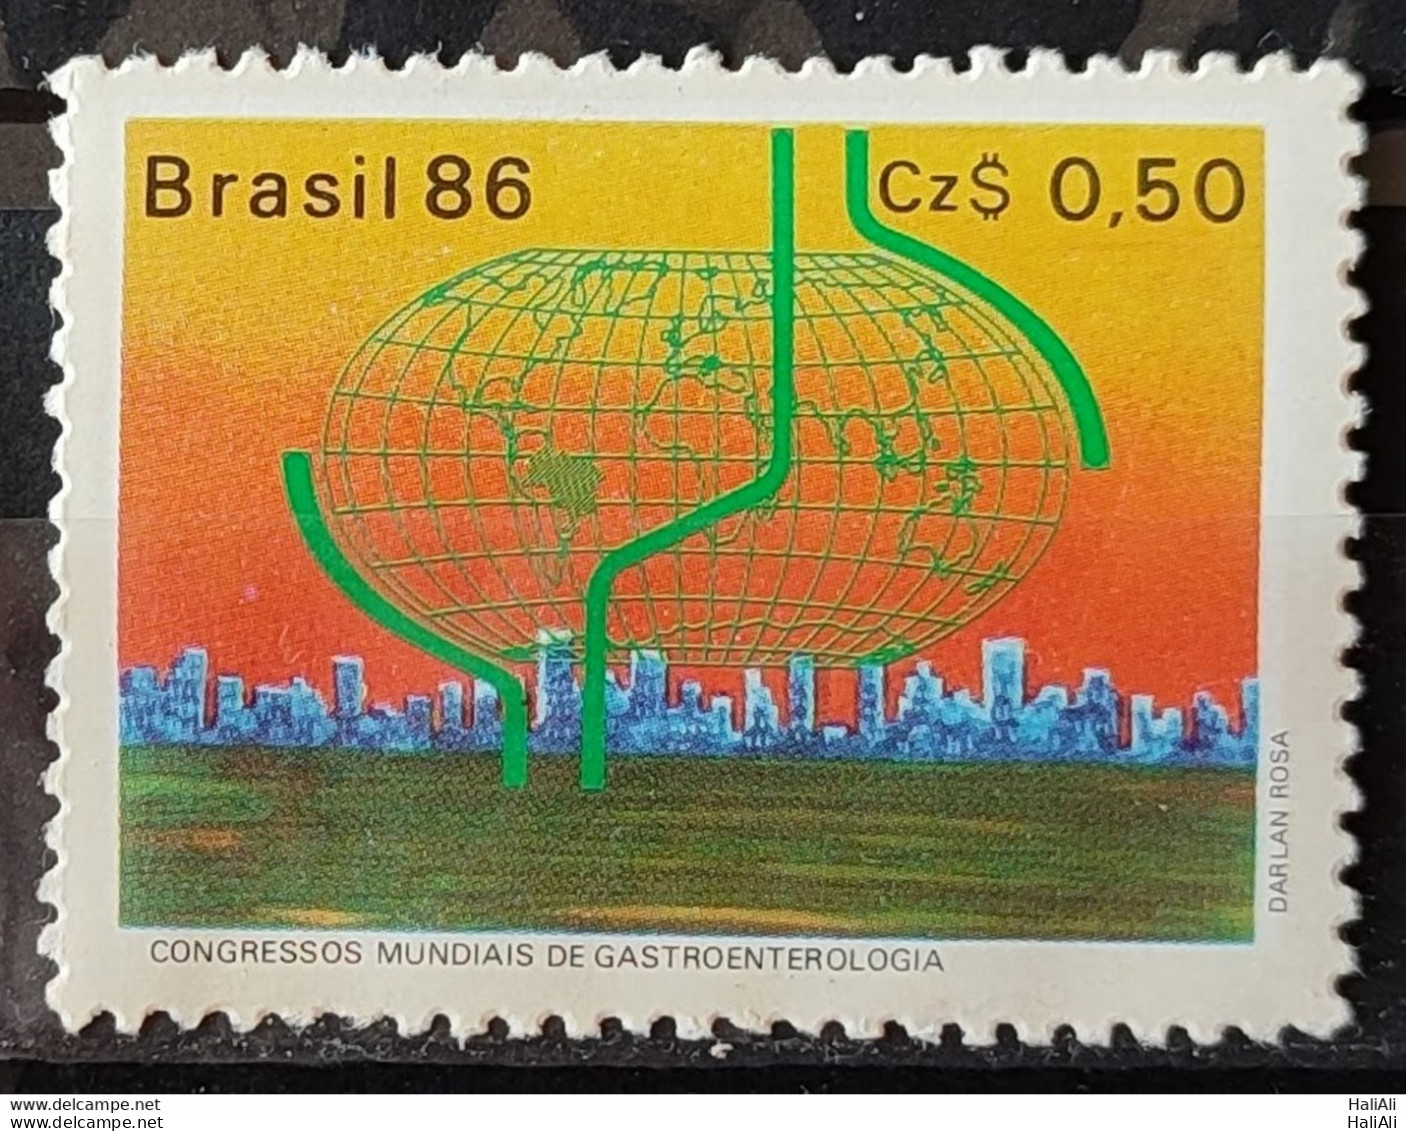 C 1520 Brazil Stamp Congress Of Gastroenterology Health 1986.jpg - Ungebraucht